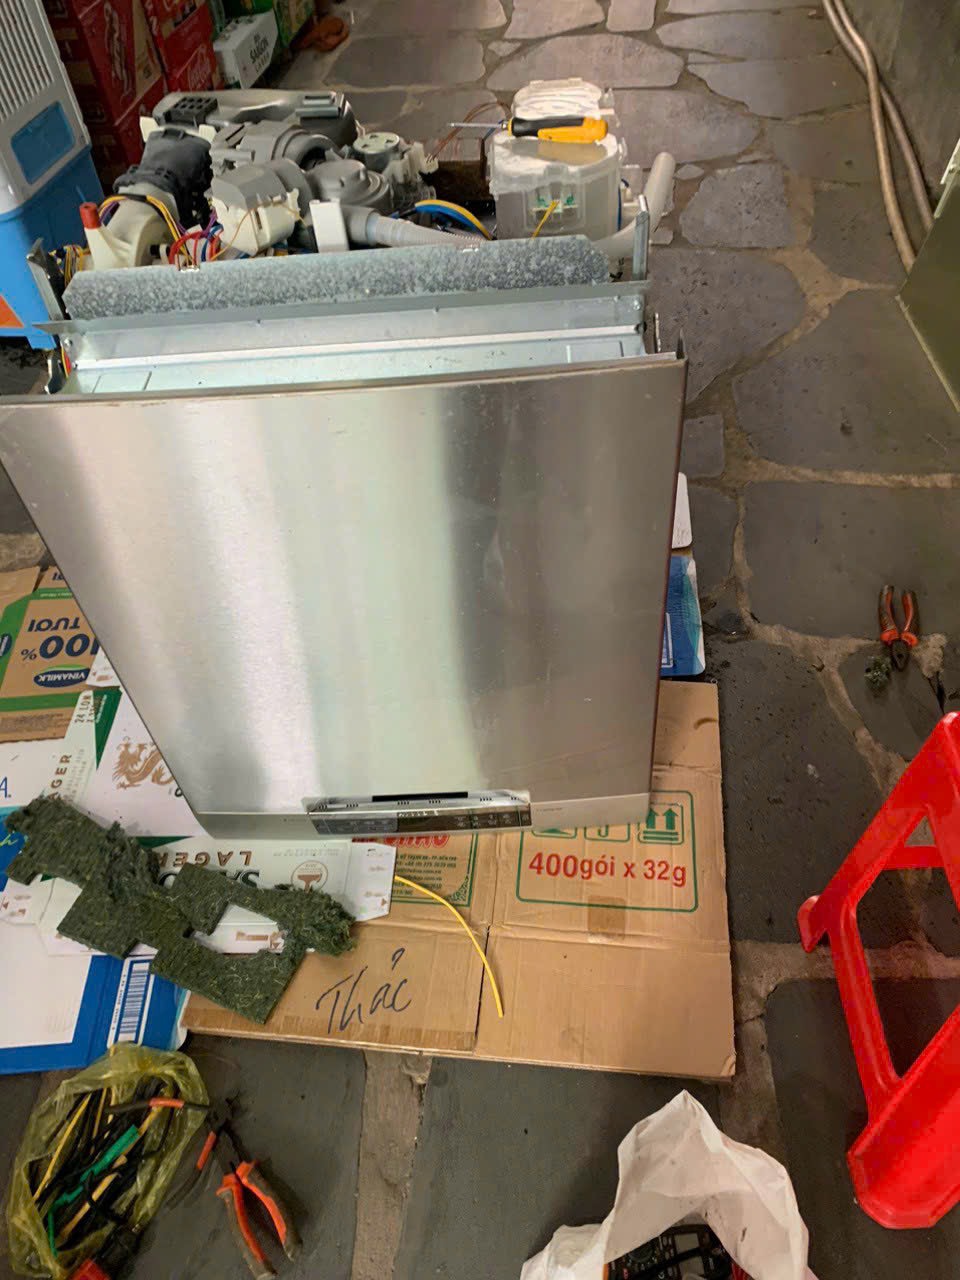 z4597911747282 aab3974de6fb69b24dd37f9c3febda28 - Sửa máy rửa bát Bosch uy tín tại Sài Gòn